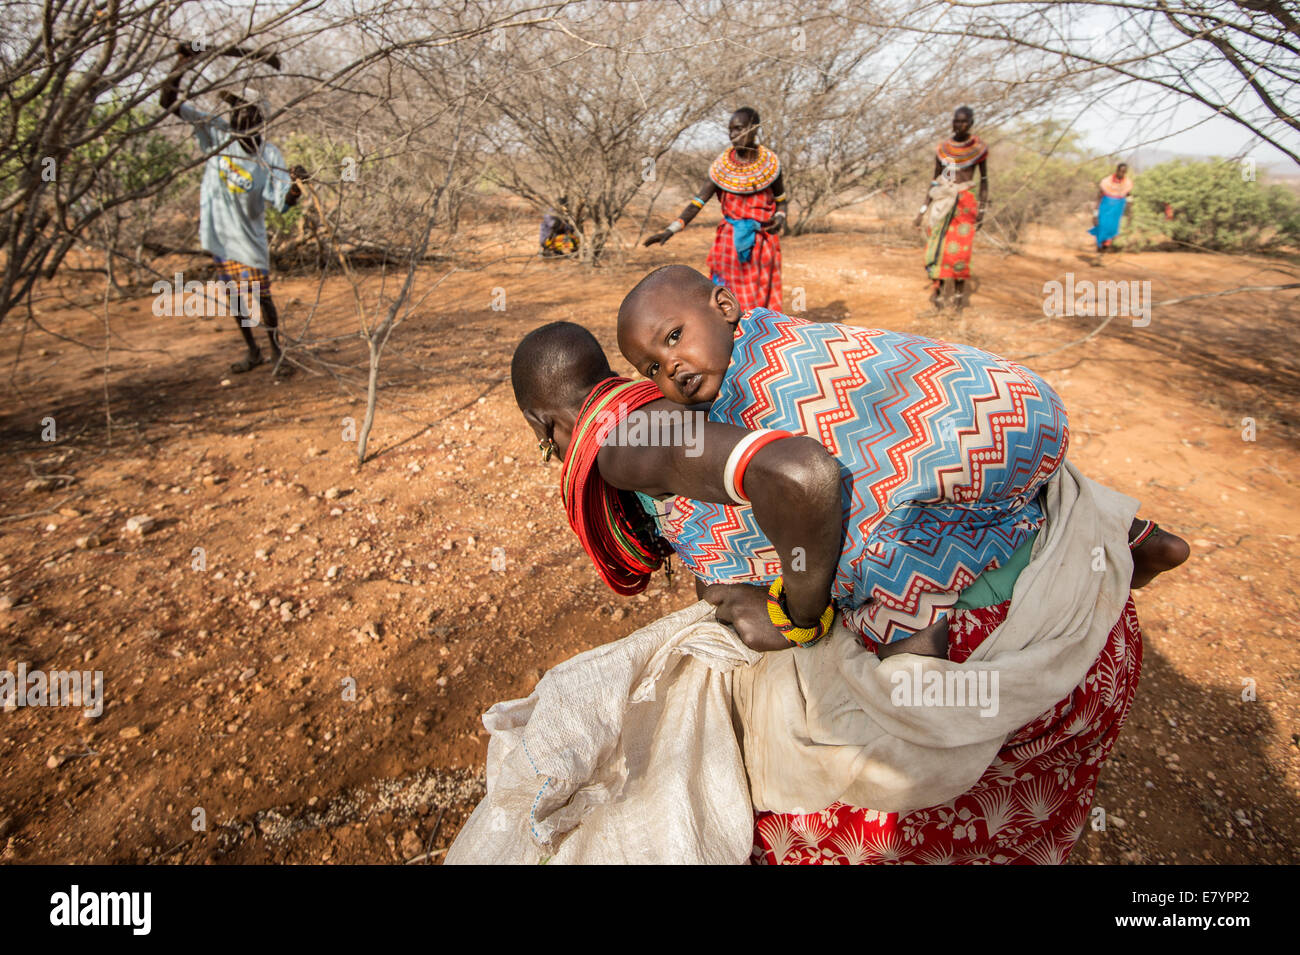 En la Puerta Oeste de conservación en el norte de Kenya, las mujeres Samburu derribado reficiens Acacia, un n de especies invasoras que absorbe los nutrientes Foto de stock